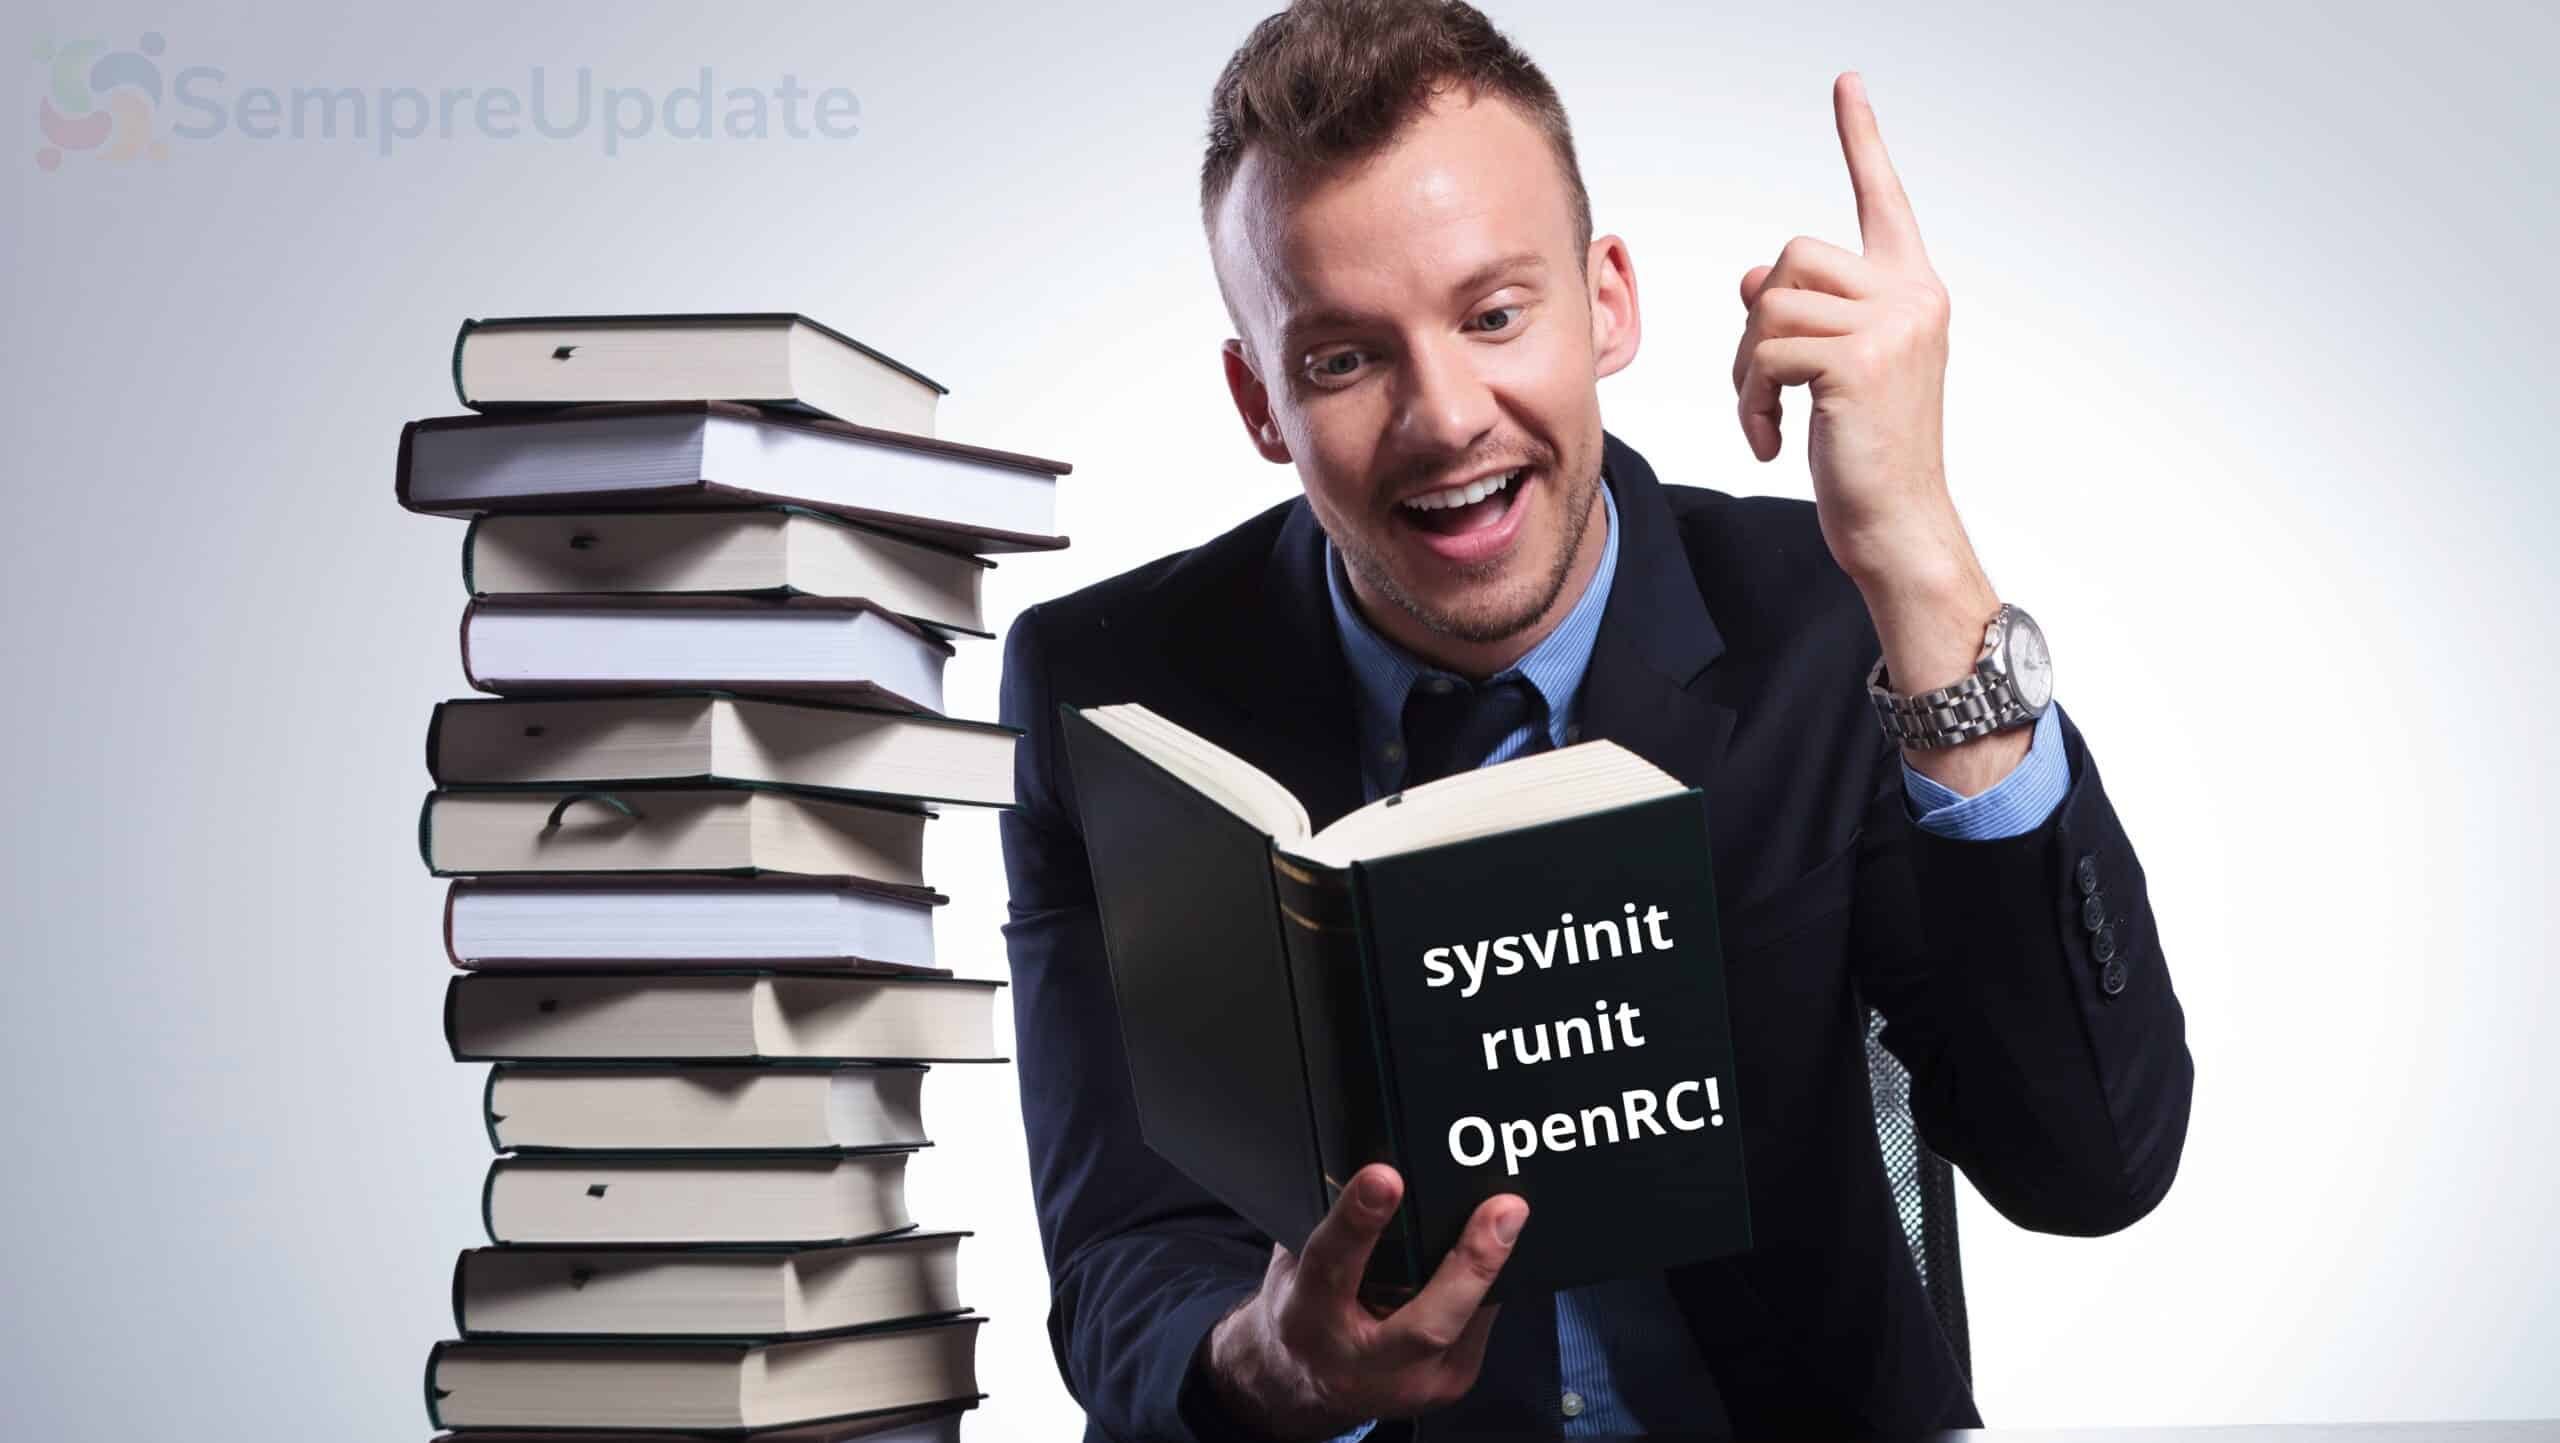 Entenda o que é sysvinit, runit, ou OpenRC!